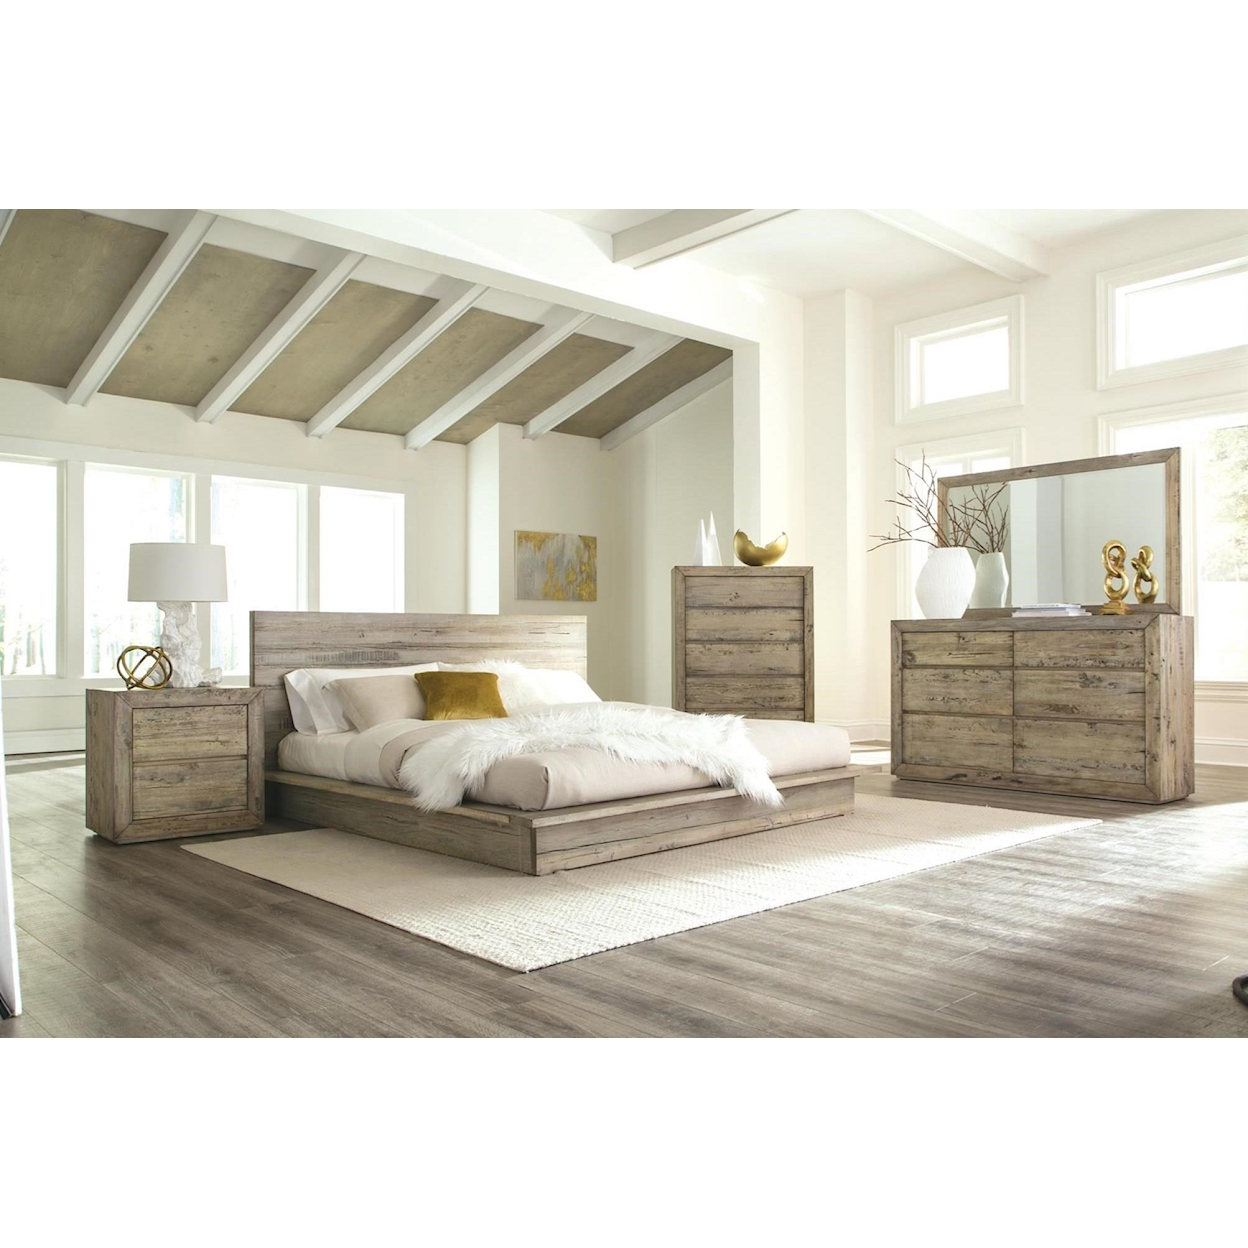 Napa Furniture Design Renewal King Low Profile Bed